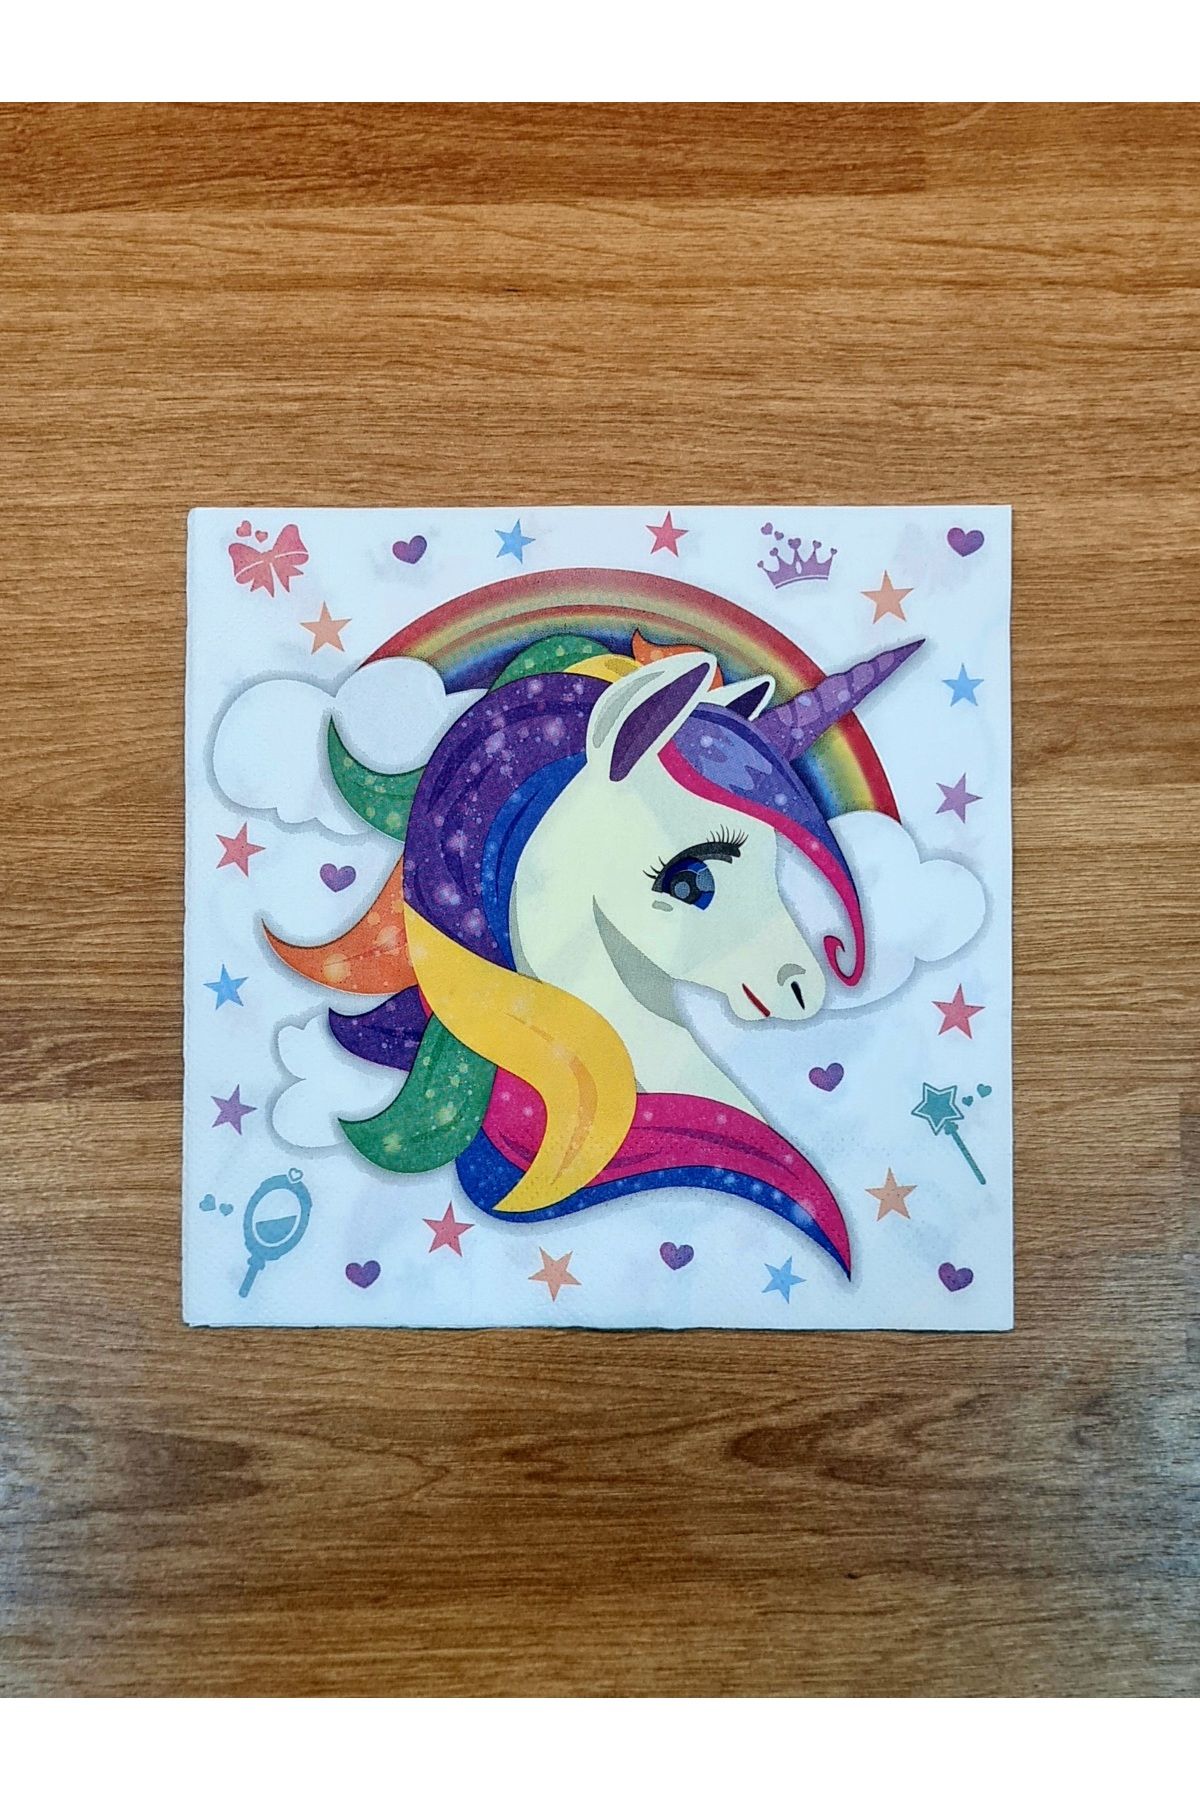 merni Unicorn Boynuzlu At Gökkuşağı Yıldız Desenli Renkli Baskılı Kağıt Peçete 32x32 cm 8 Adet